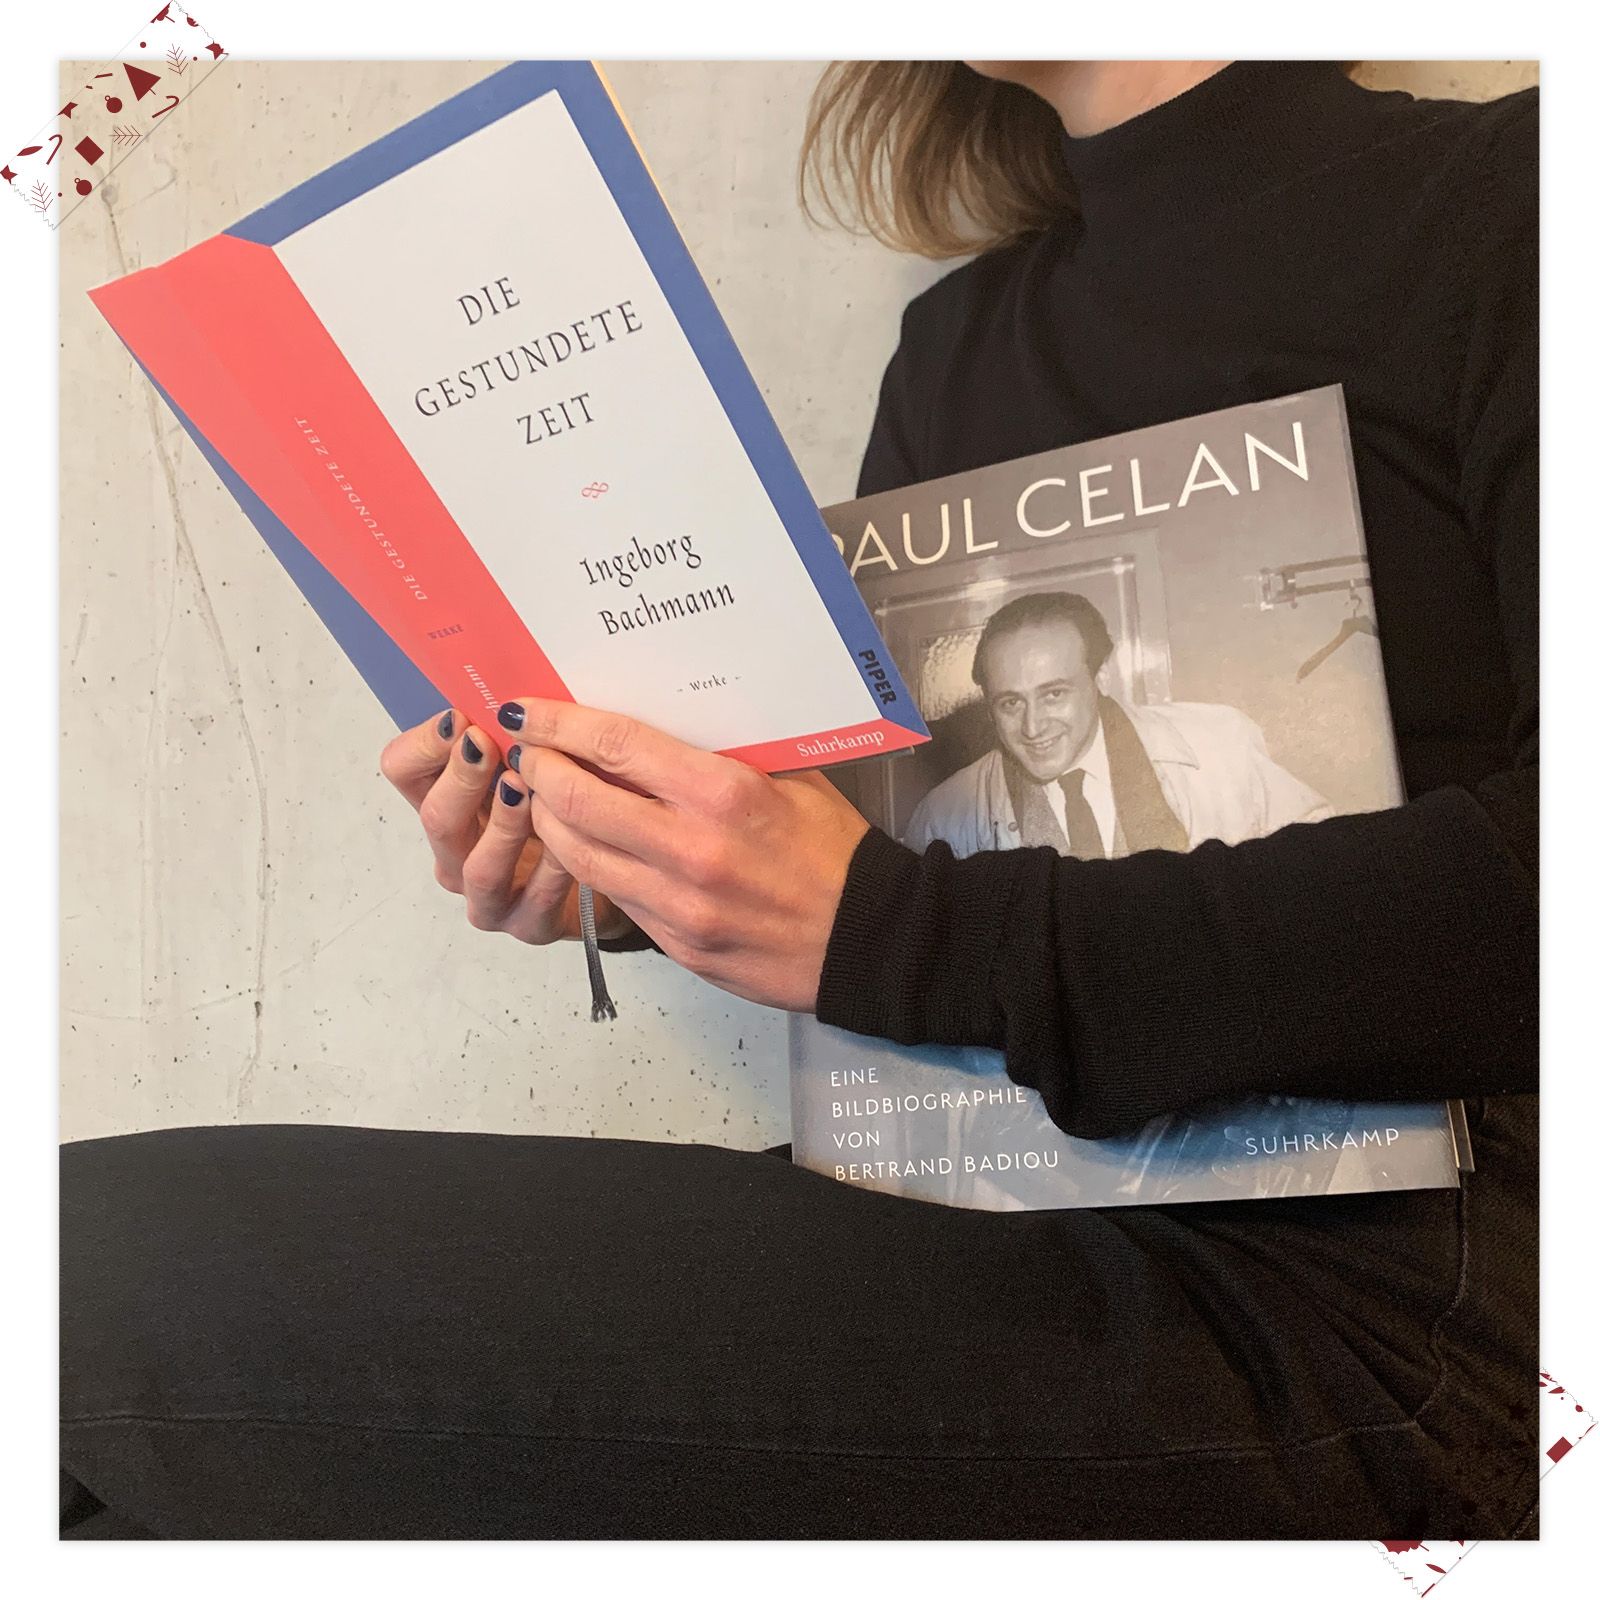 Nina Selzer (Lektorat Taschnbuch) empfiehlt »Paul Celan« von Bertrand Badiou und »Die gestundete Zeit« von Ingeborg Bachmann